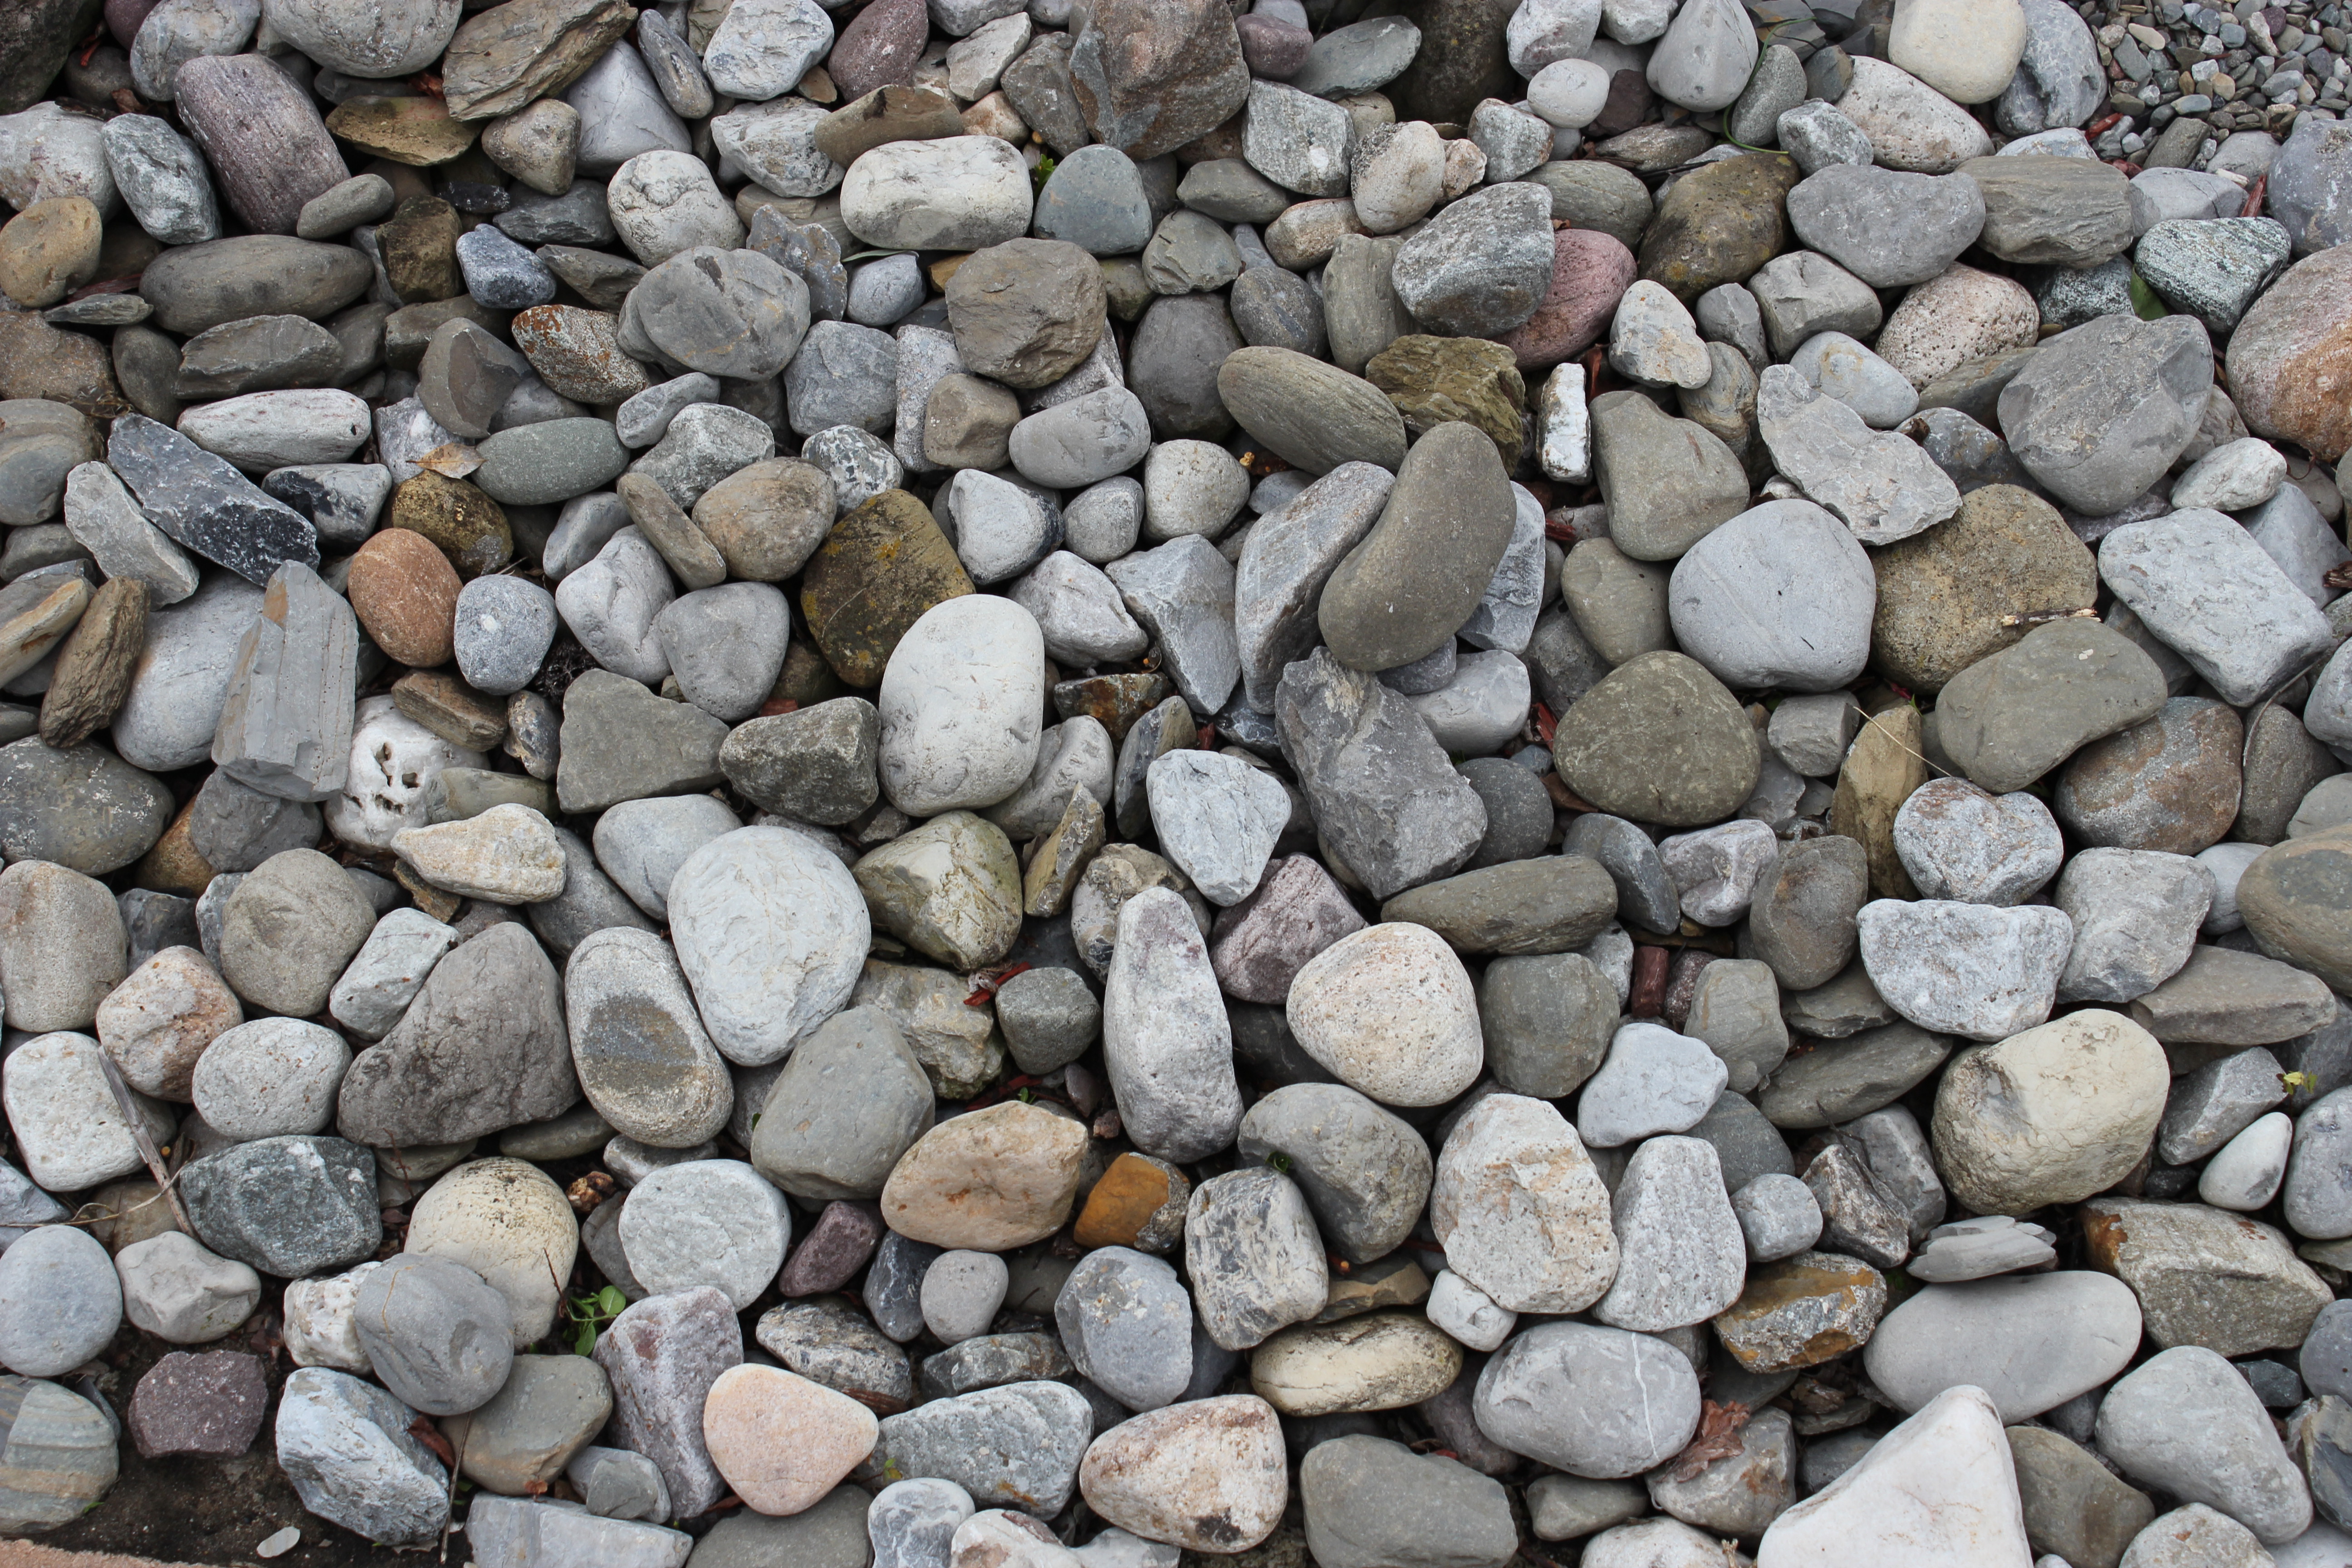 Example of Stones